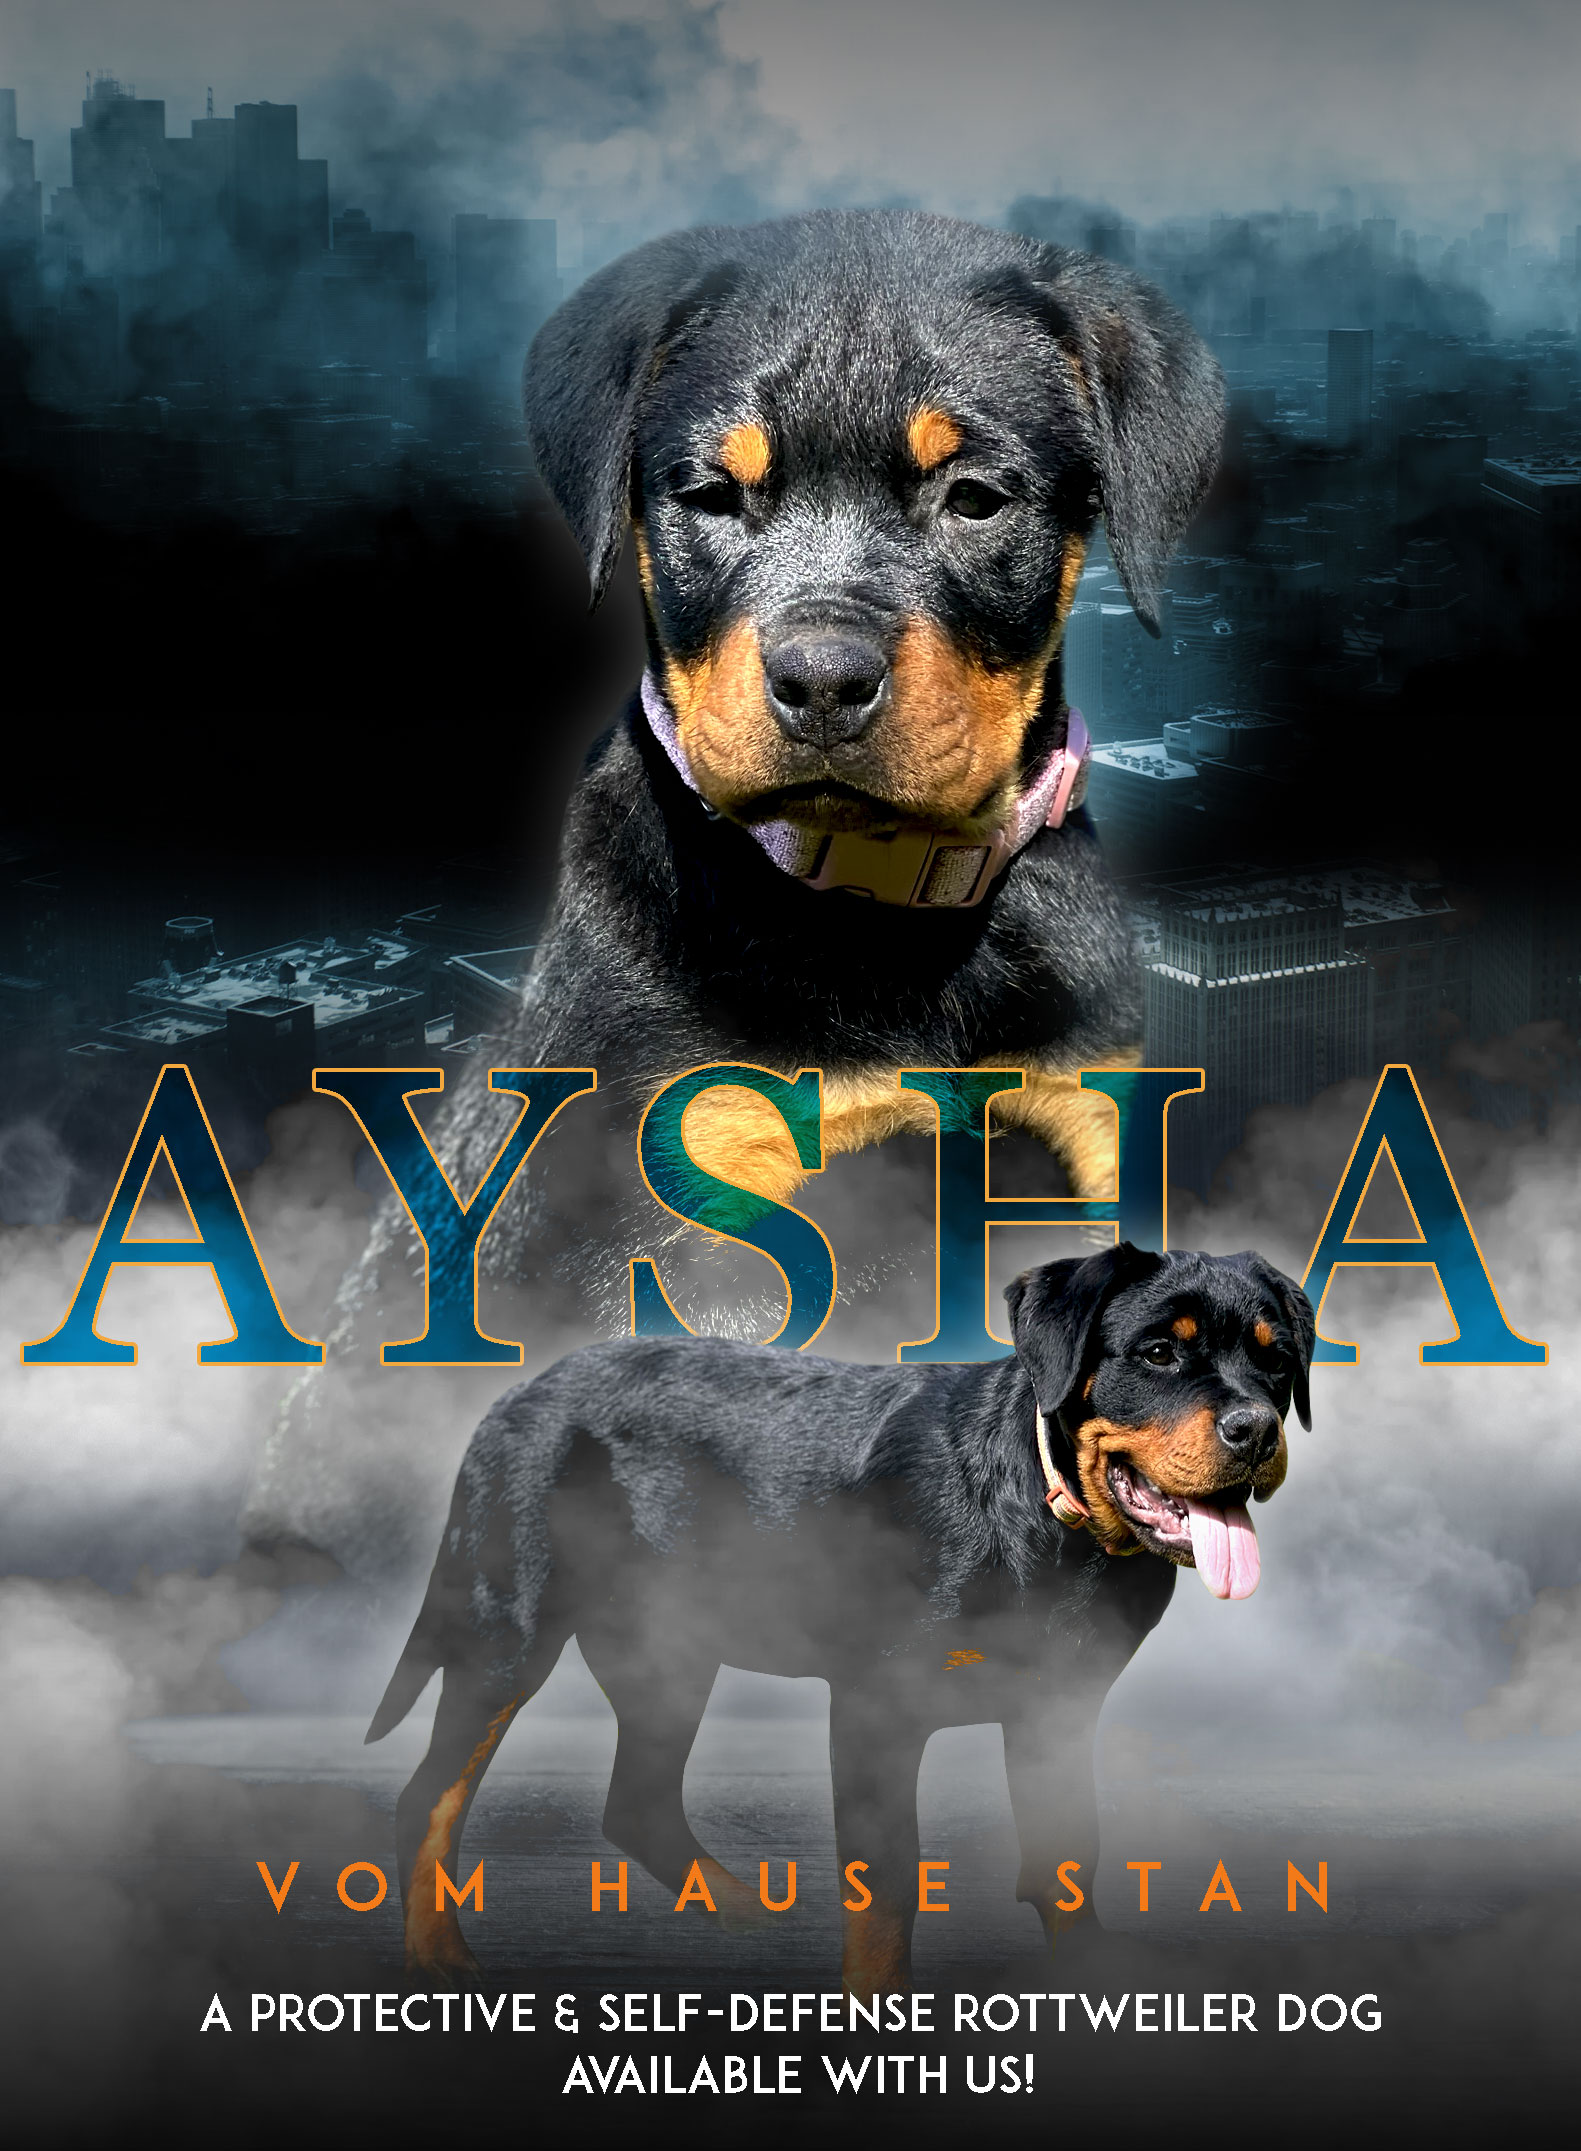 Aysha